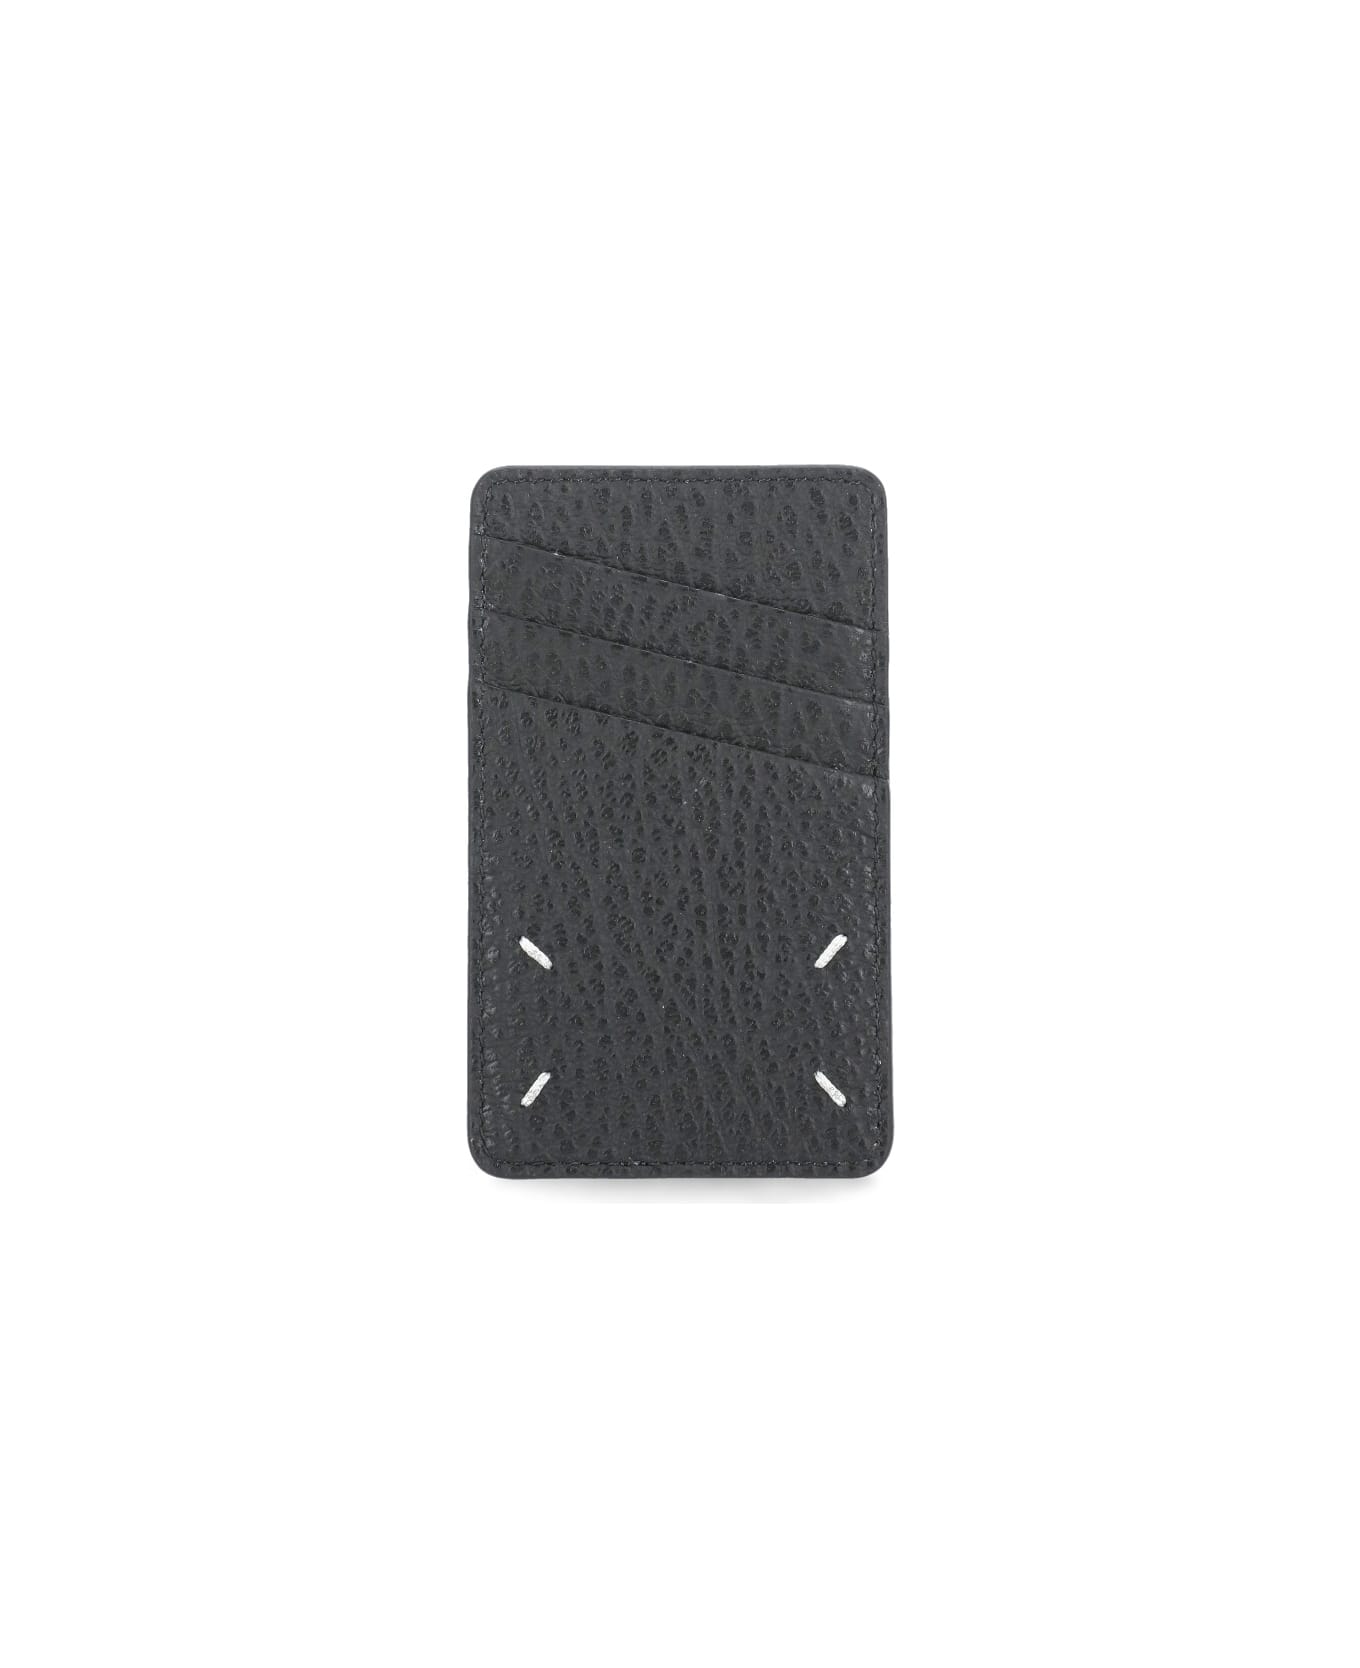 Maison Margiela Four Stitches Cards Holder - Black